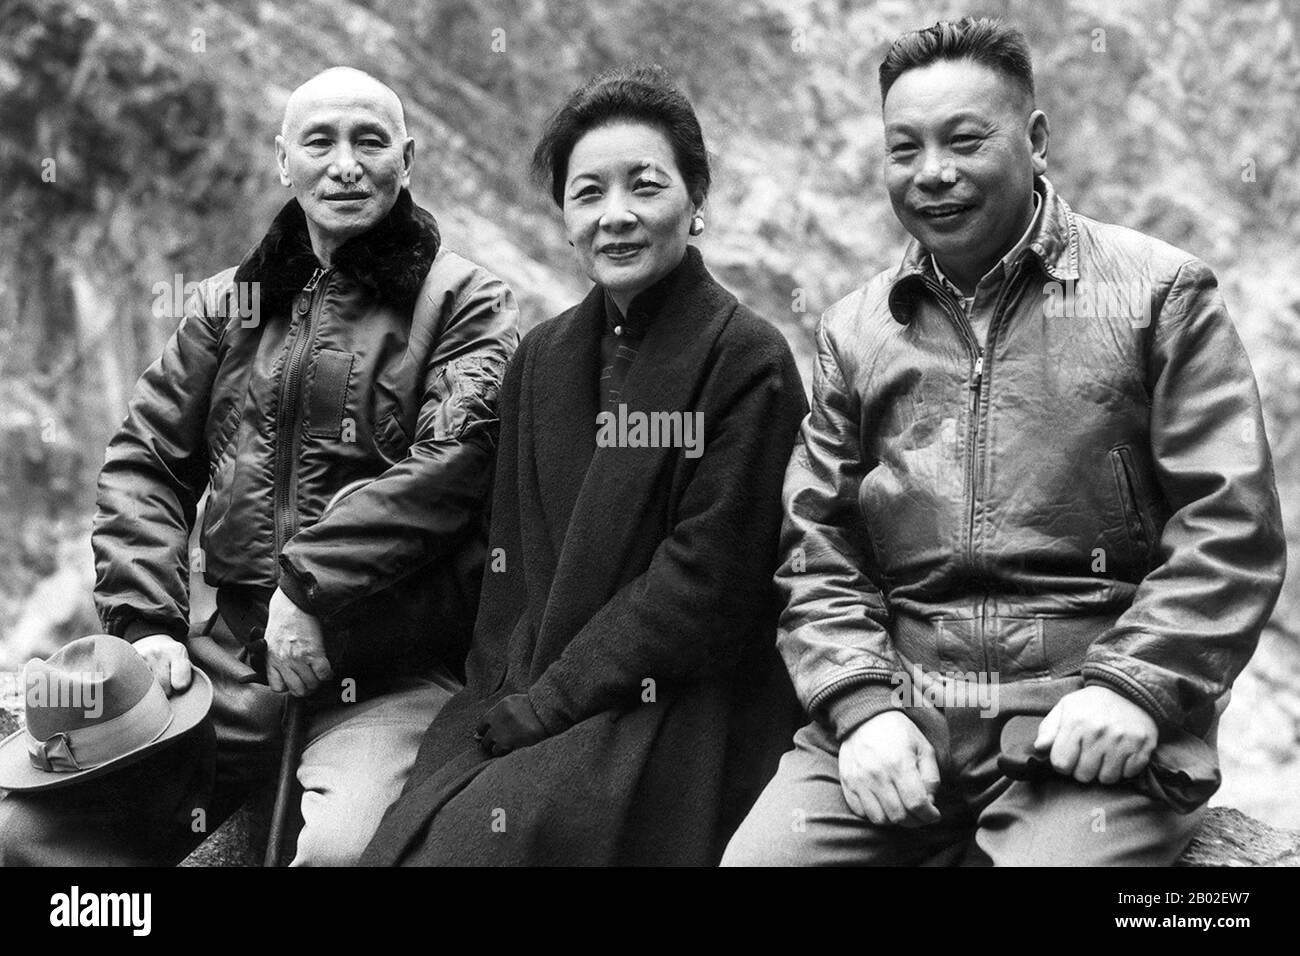 Chiang Ching-kuo (蔣經國) (27,1 1910 de abril – 13 de enero de 1988), político y líder de Kuomintang (KMT), fue hijo del Generalísimo y Presidente Chiang Kai-shek y ocupó numerosos cargos en el gobierno de la República de China (ROC). Sucedió a su padre como primer Ministro de la República de China entre 1972 y 1978, y fue Presidente de la República de China desde 1978 hasta su muerte en 1988. Bajo su mandato, el gobierno de la República de China, aunque autoritario, se volvió más abierto y tolerante al disenso político. Hacia el final de su vida, Chiang relajó el gobierno con Foto de stock